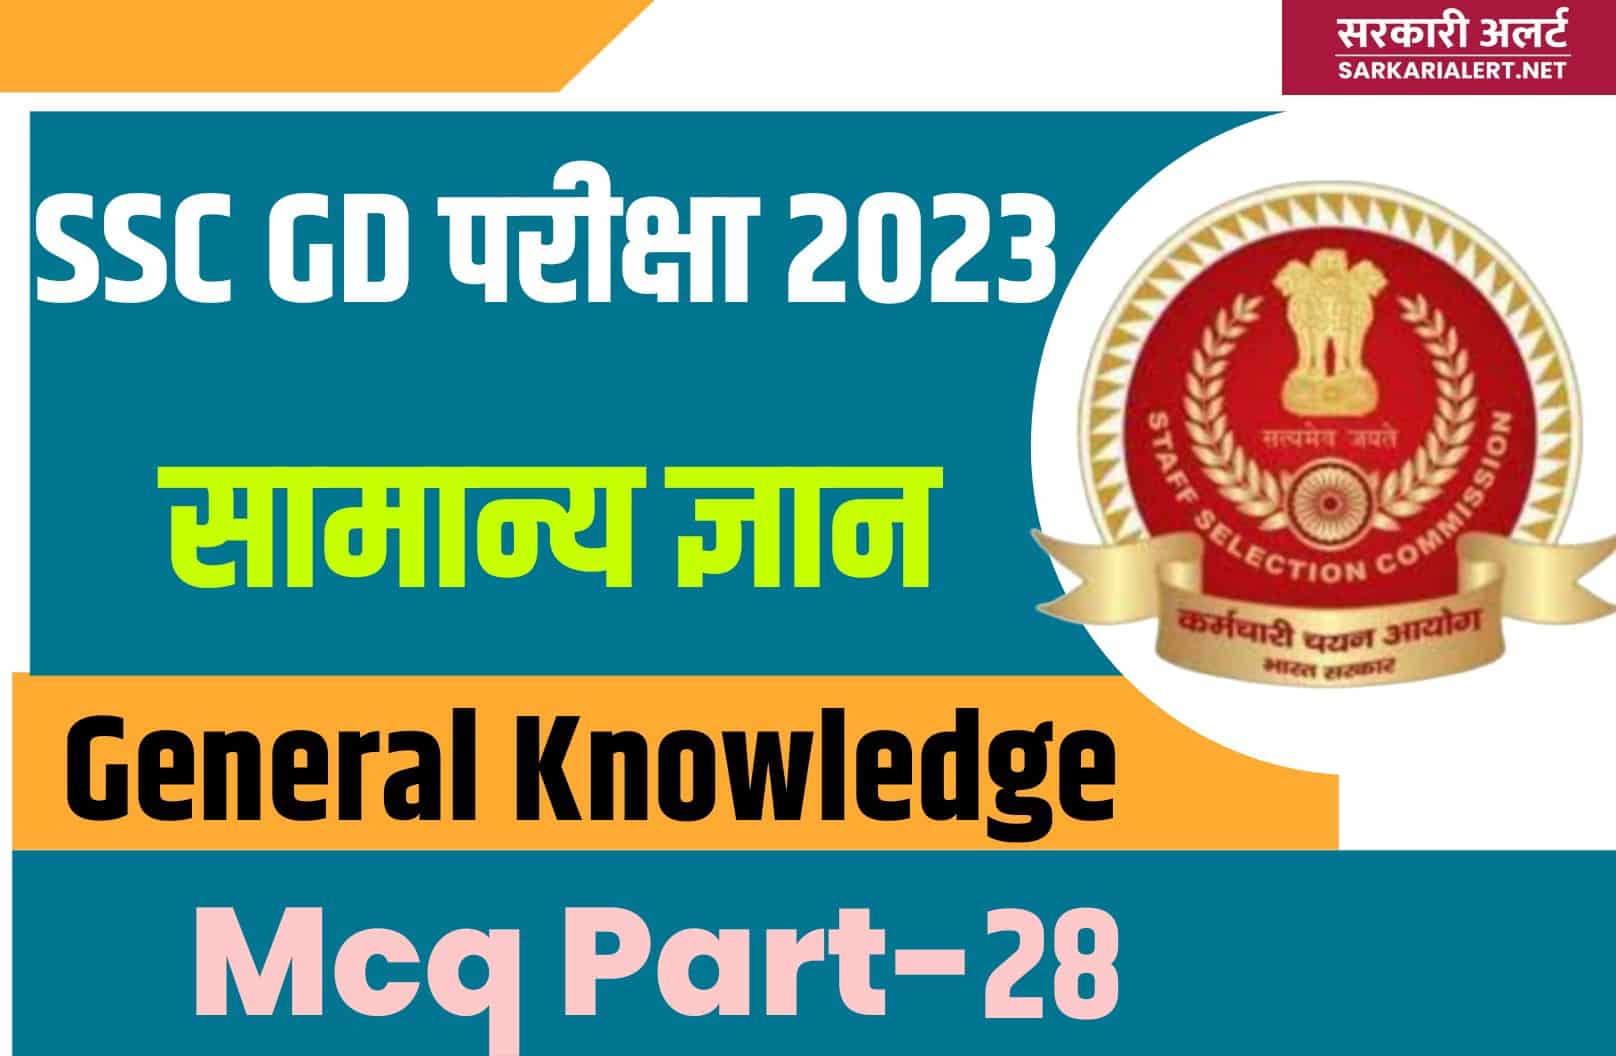 SSC GD Exam 2023 GK MCQ – 28 | सामान्य ज्ञान के मुख्य प्रश्नों का संग्रह